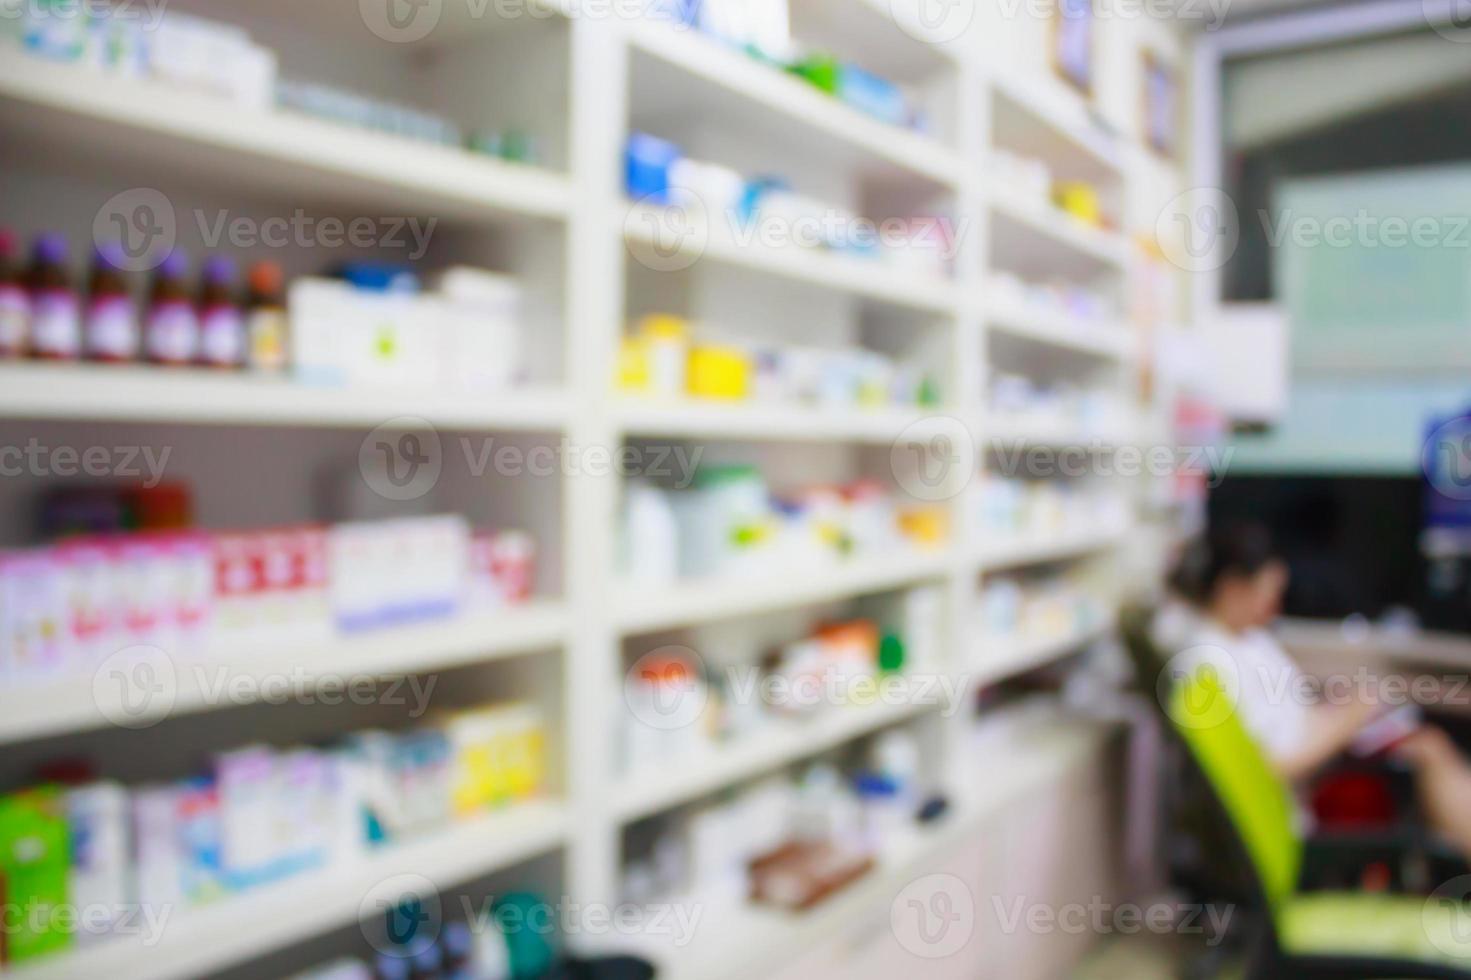 farmacia tienda drogas estantes interior fondo borroso foto